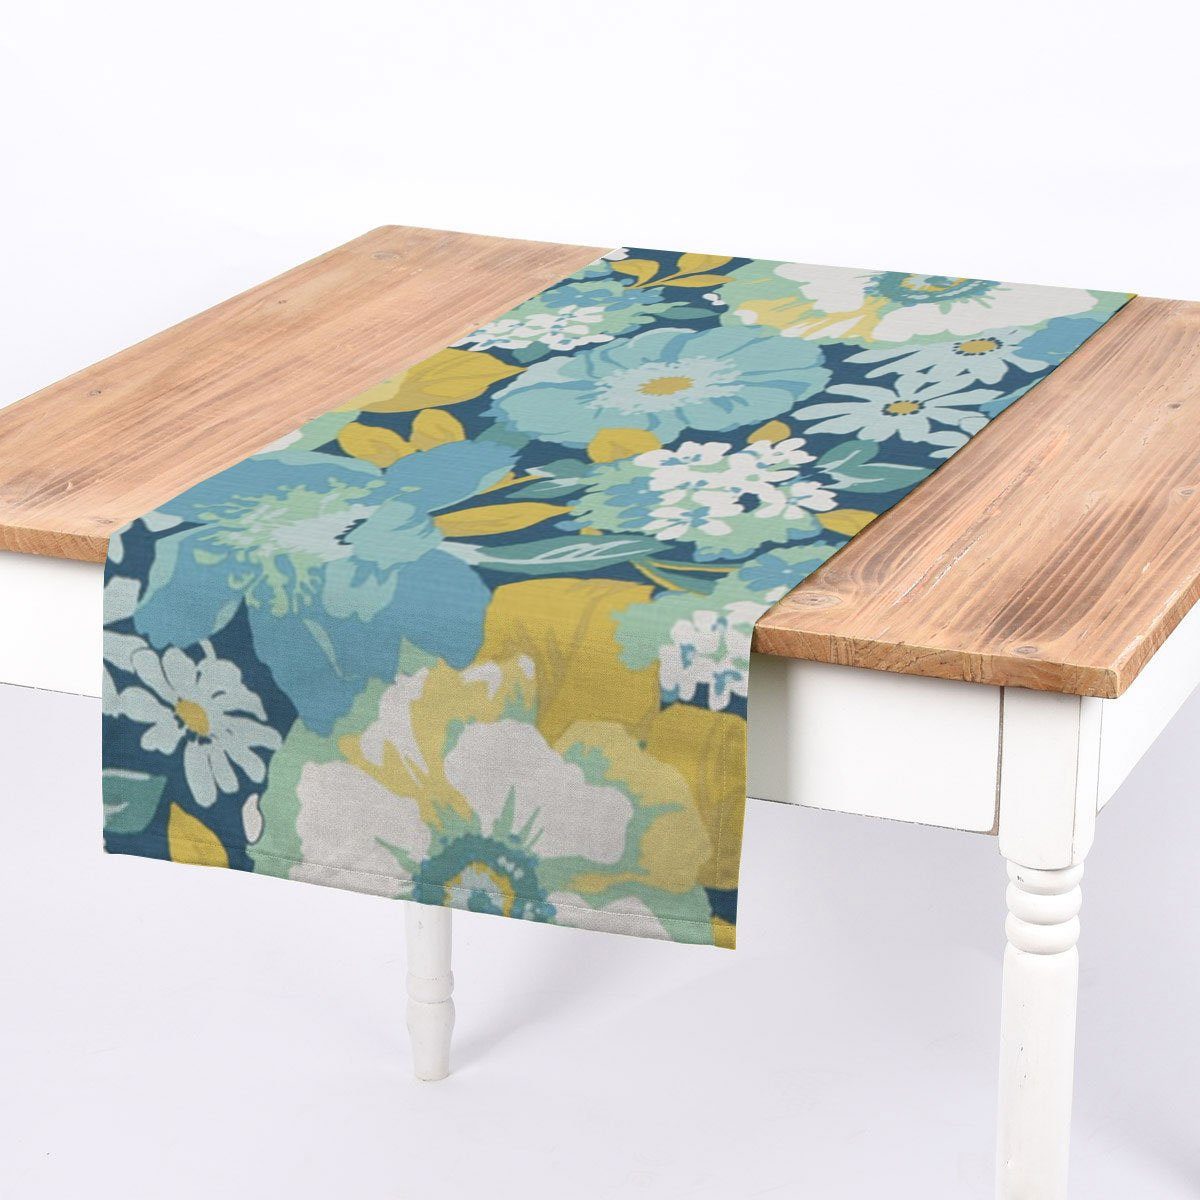 SCHÖNER LEBEN. Tischläufer SCHÖNER LEBEN. Tischläufer Blumen Blätter blau weiß grün 40x160cm, handmade